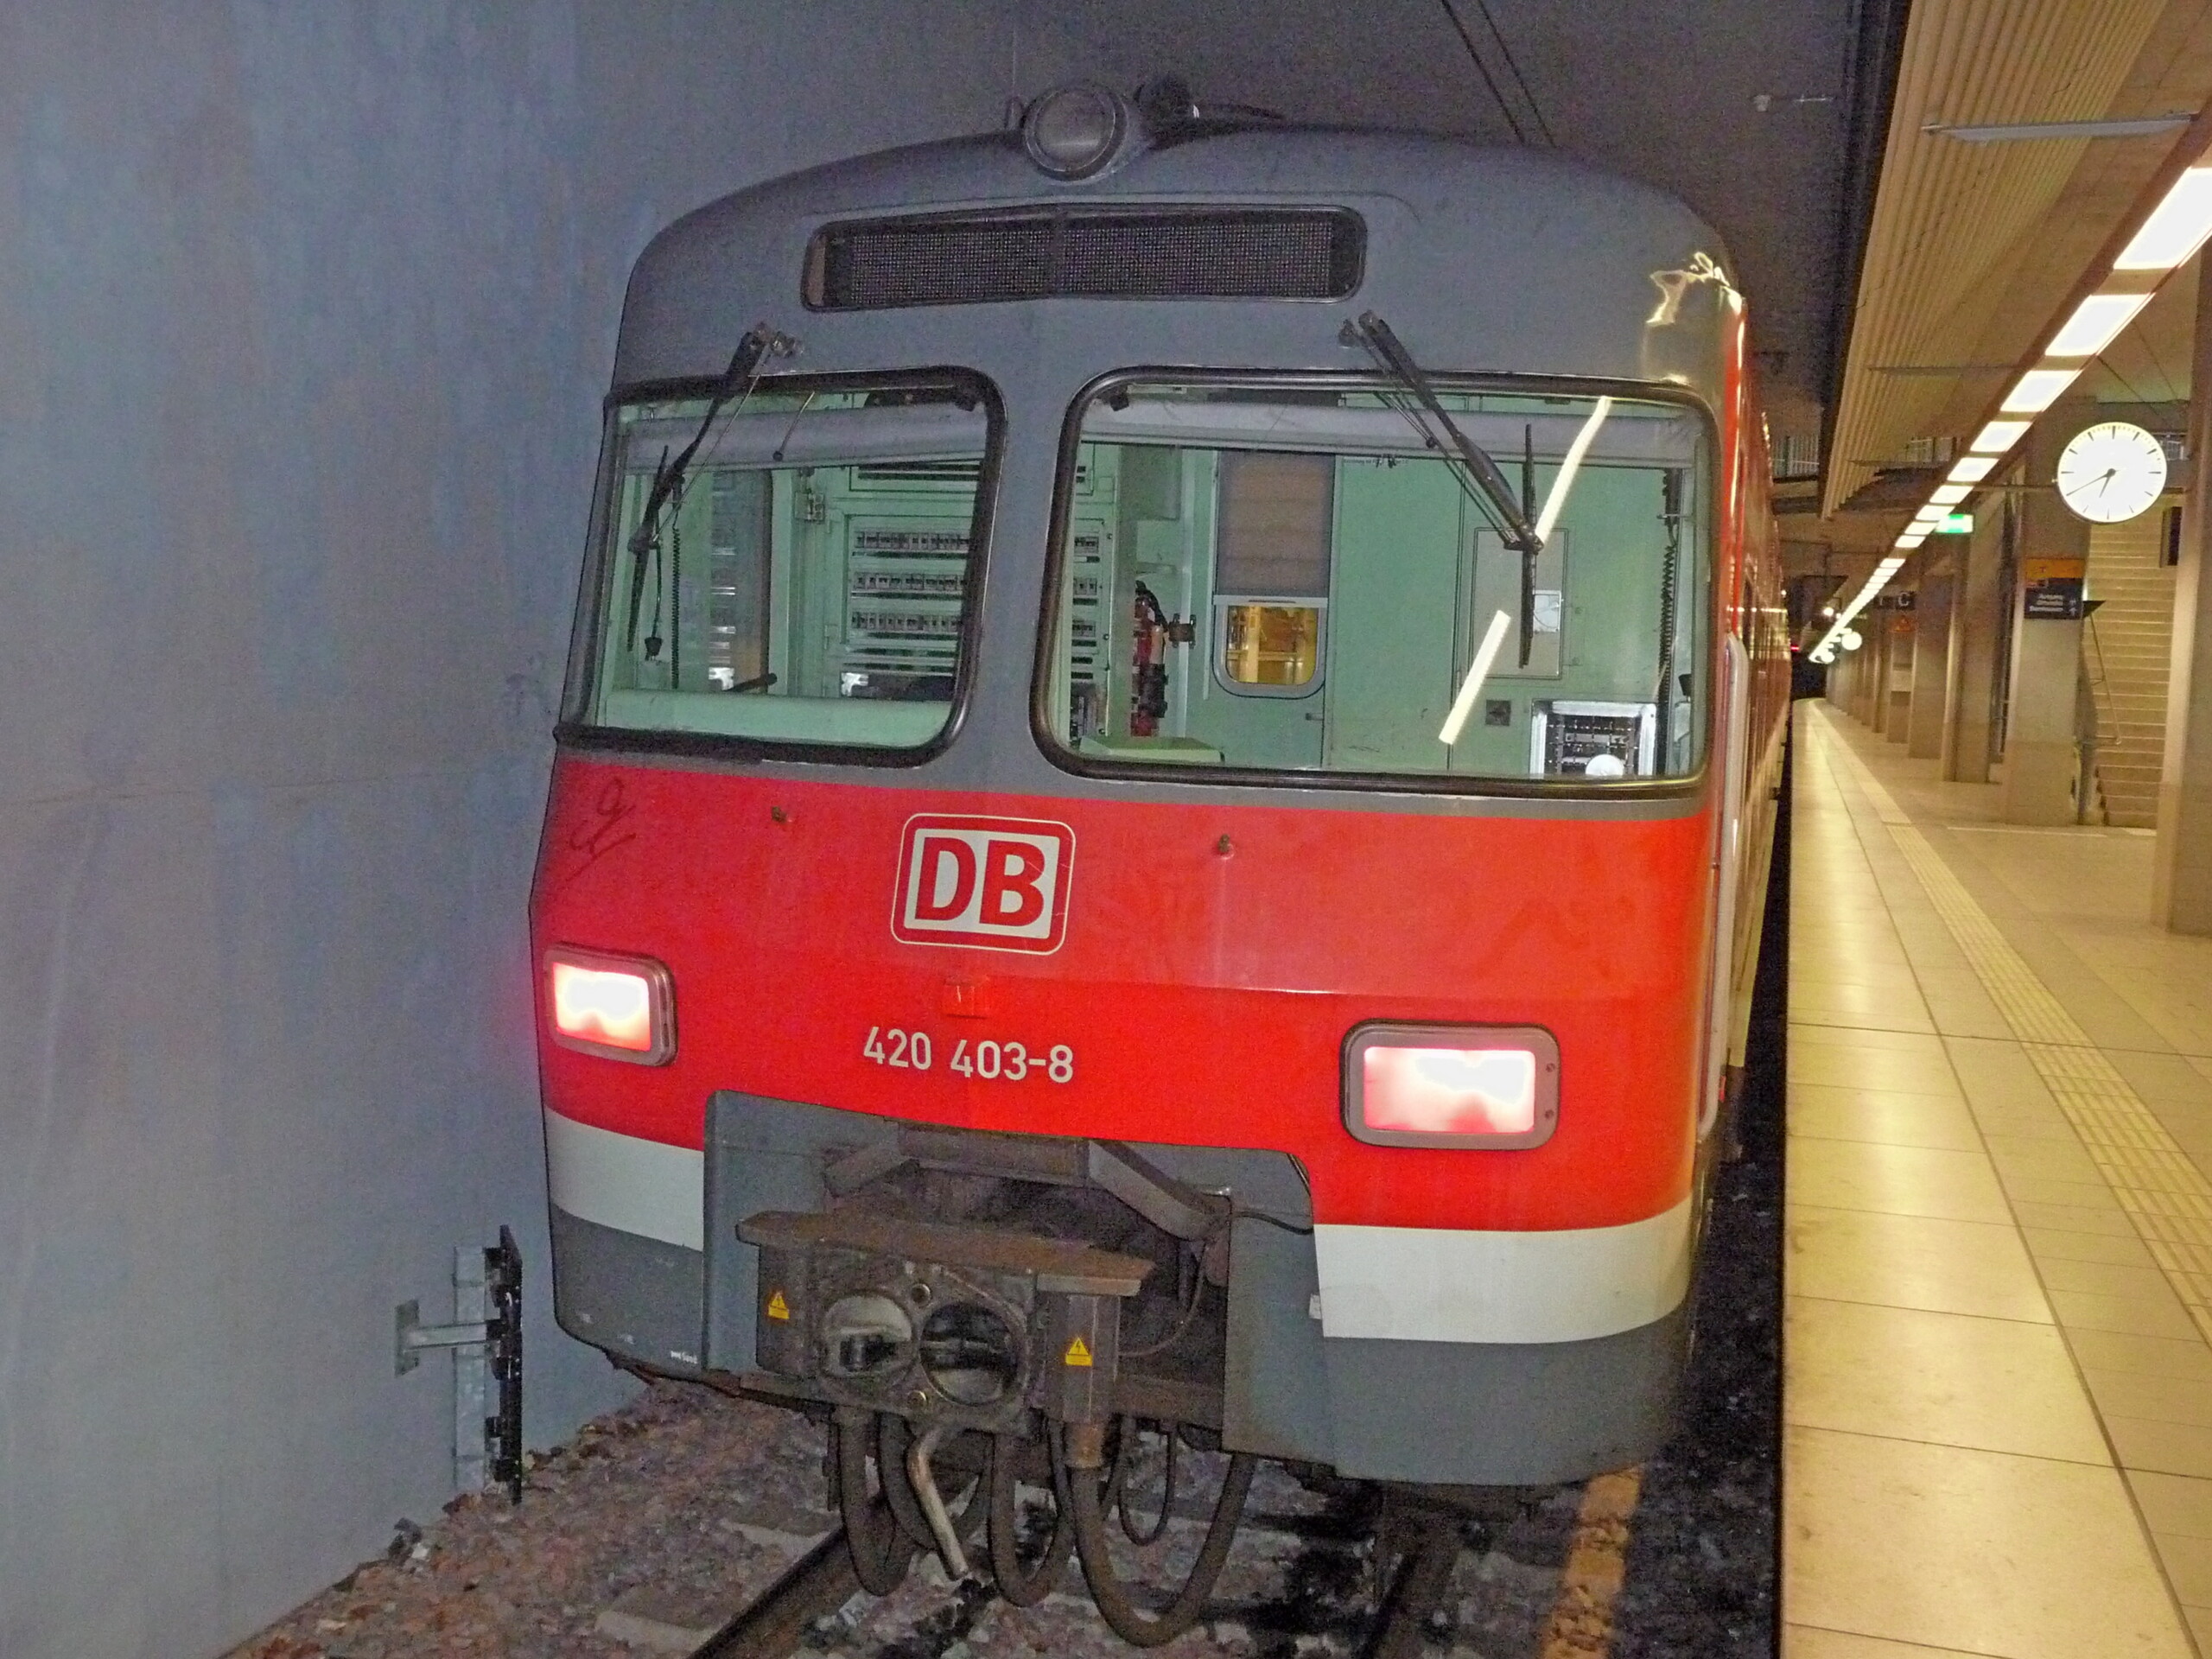 S‑Bahn Region Stuttgart: Für Pünktlichkeit, Verlässlichkeit und besseren Service!